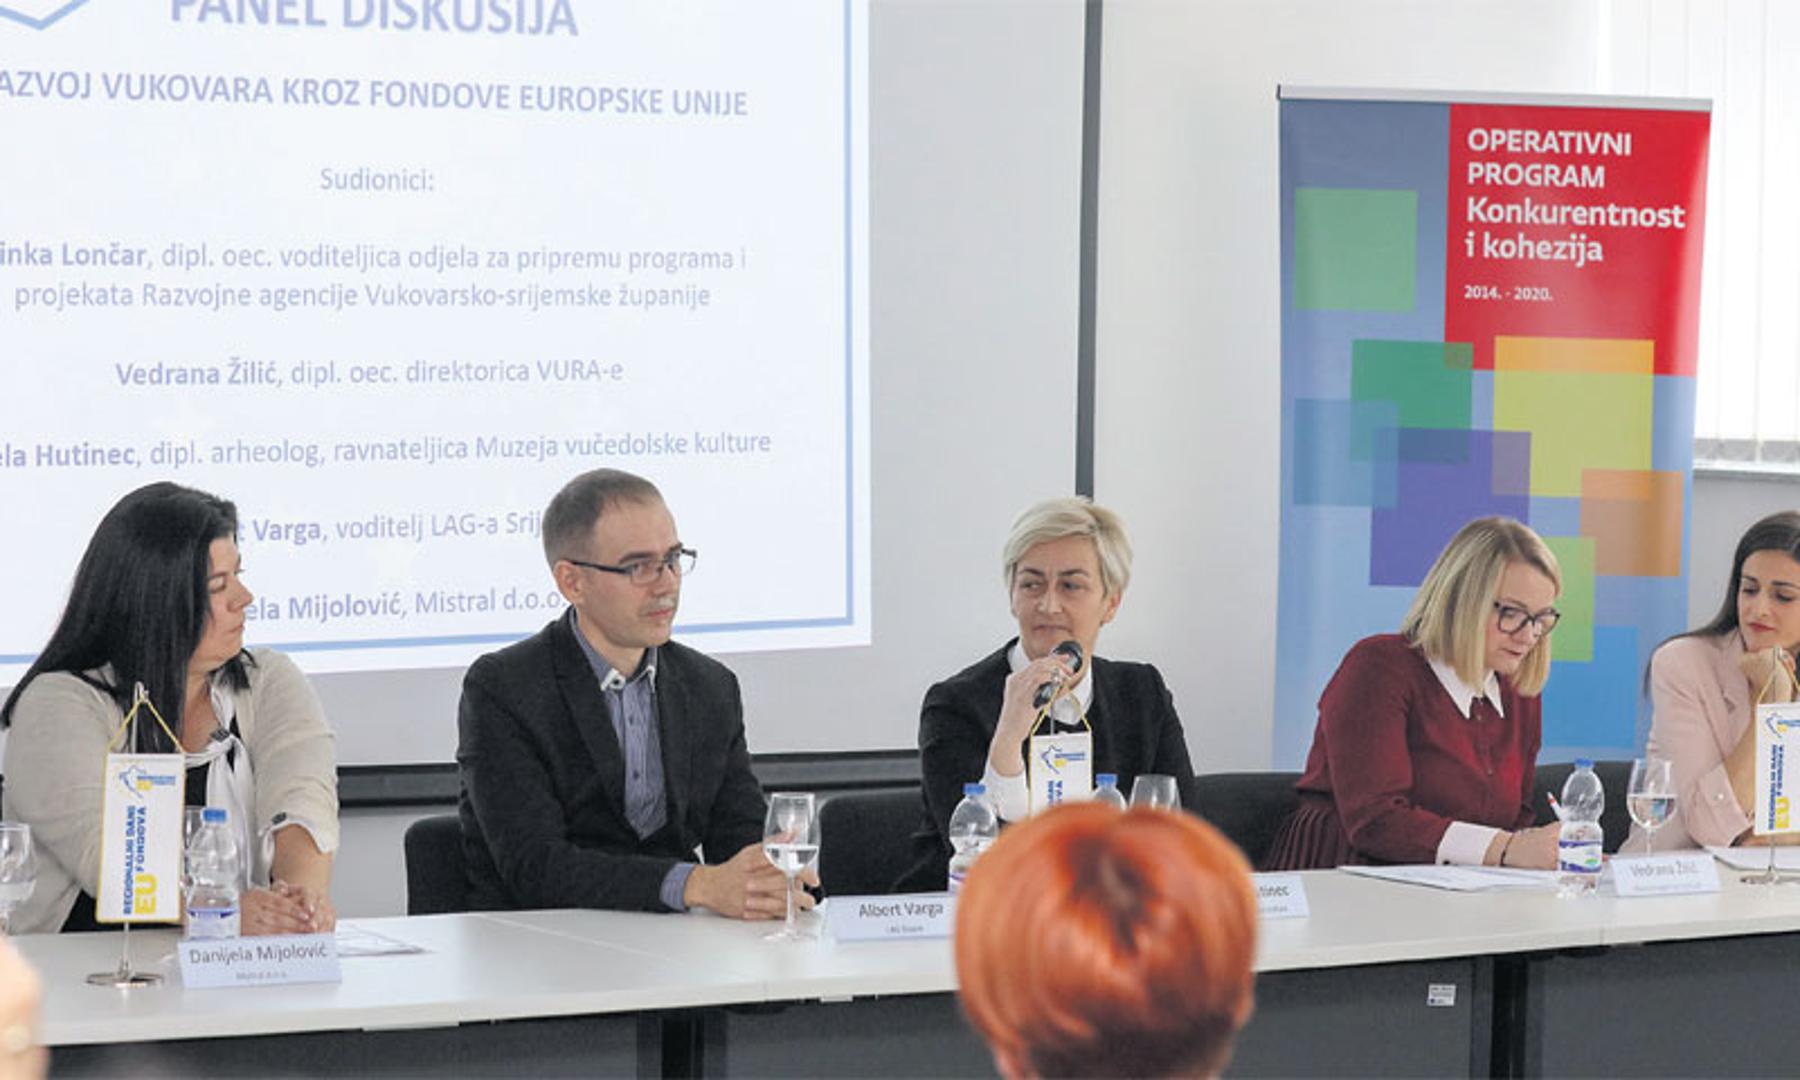 Danijela Mijolović, Albert Varga, Mirela Hutinec, Vedrana Žilić i Zrinka Lončar na raspravi u Vukovaru
